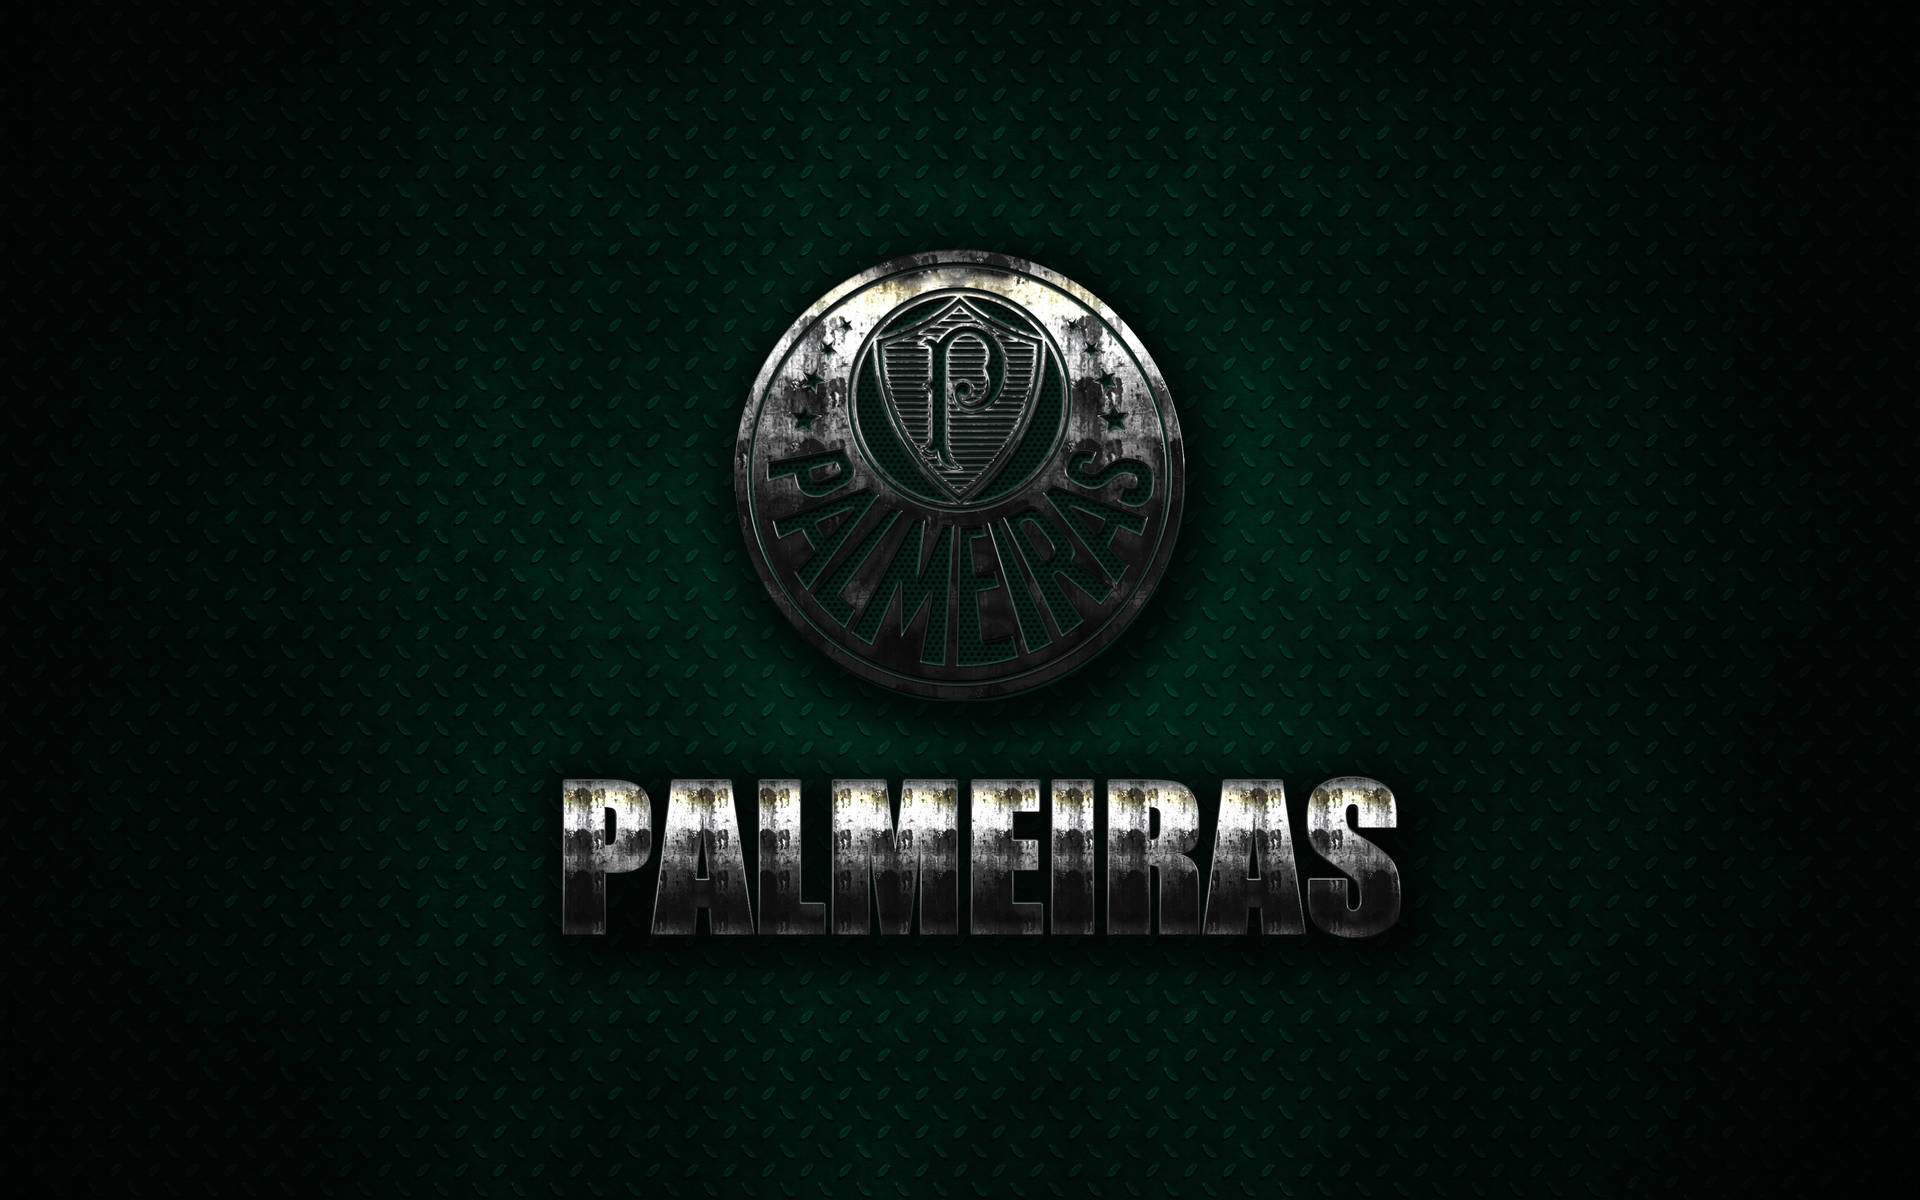 Palmeiras Metal Wallpaper